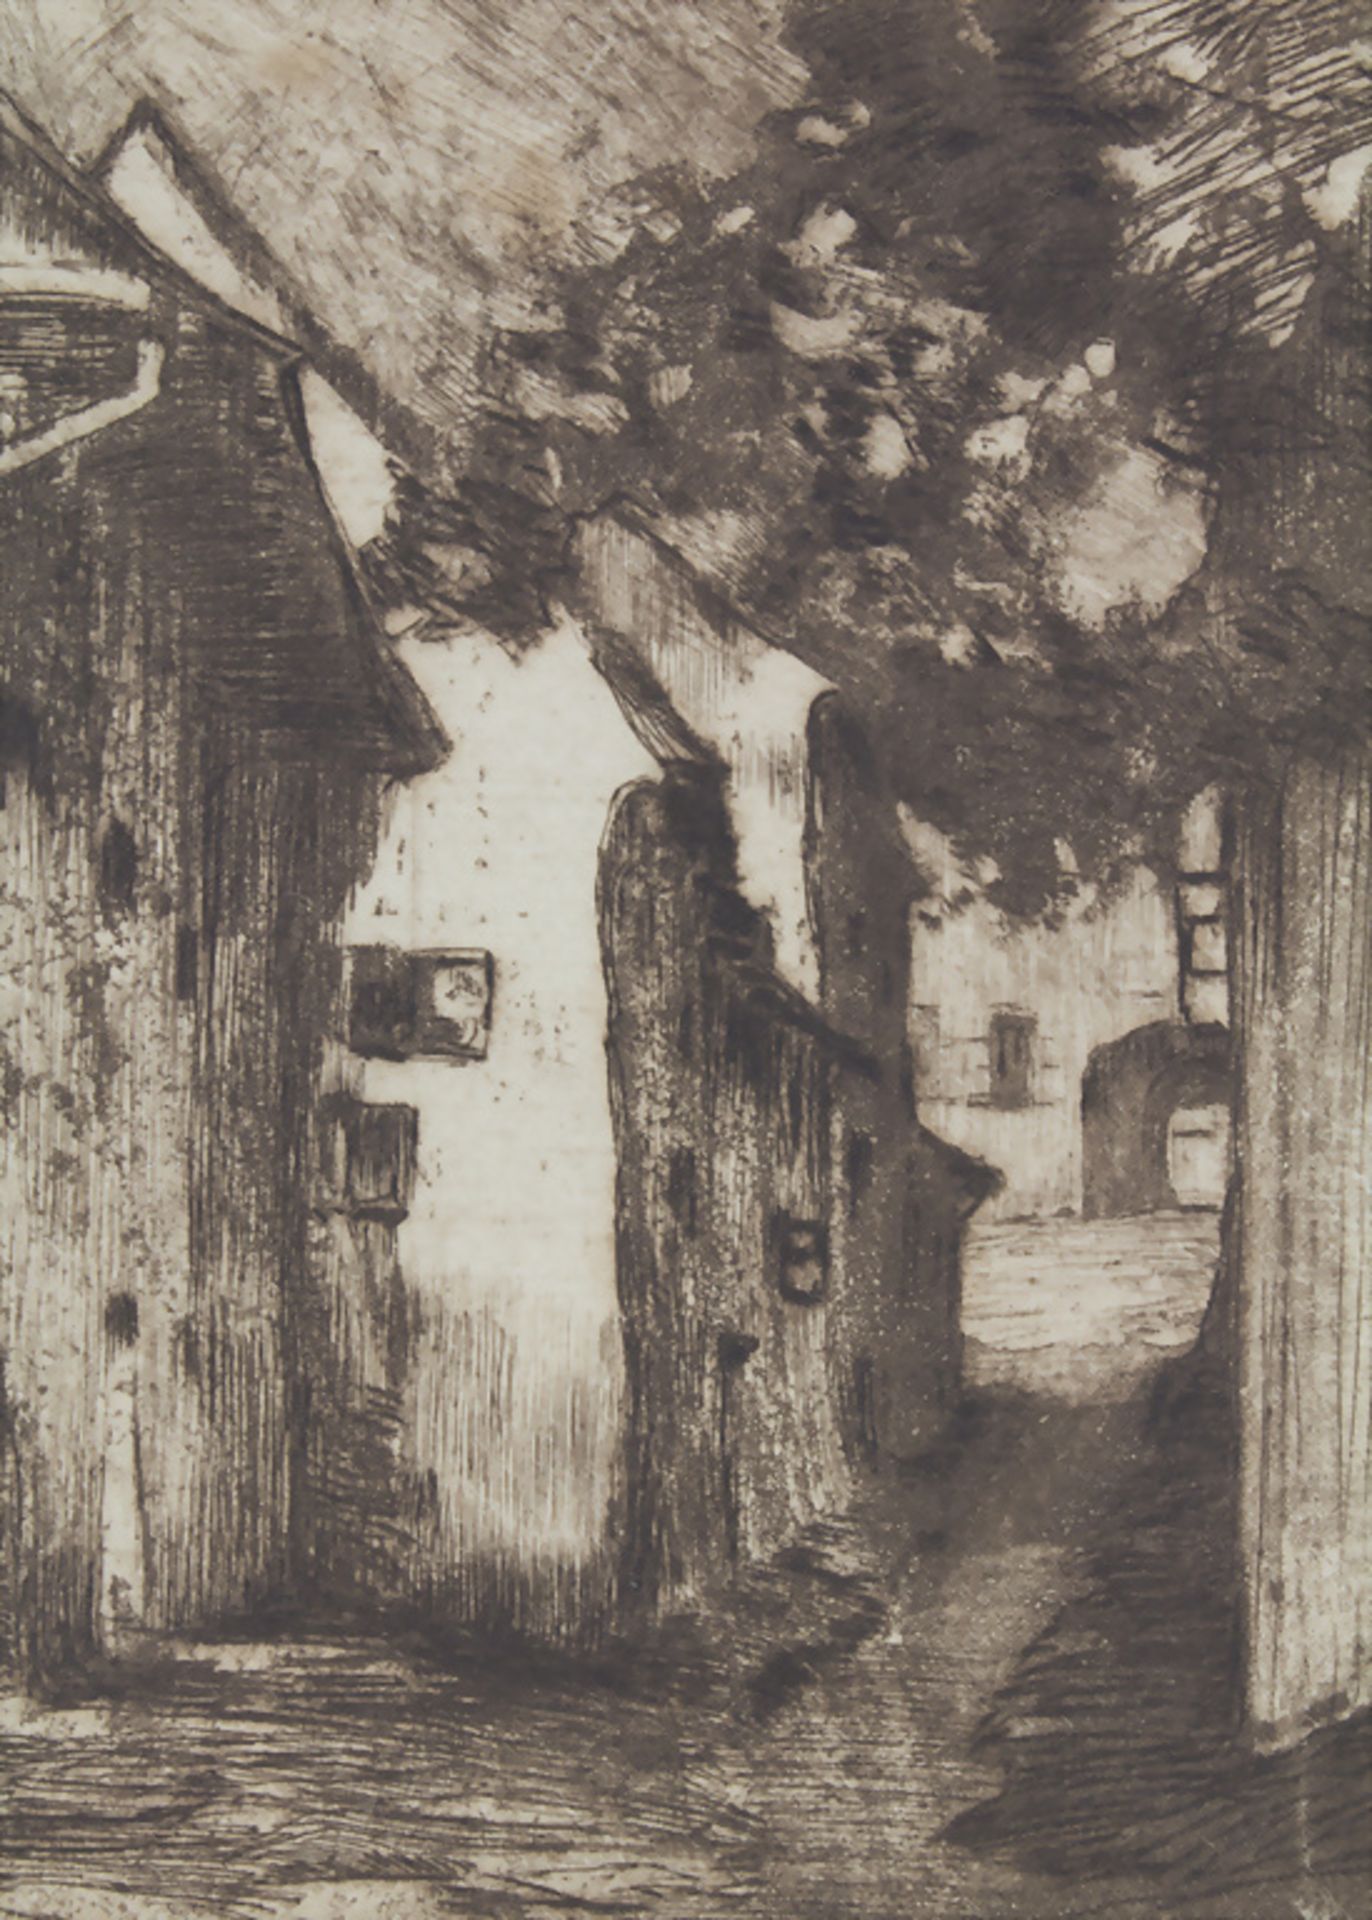 Richard Canisius (1872-1934), 'Gasse' / 'An alley' - Bild 3 aus 5